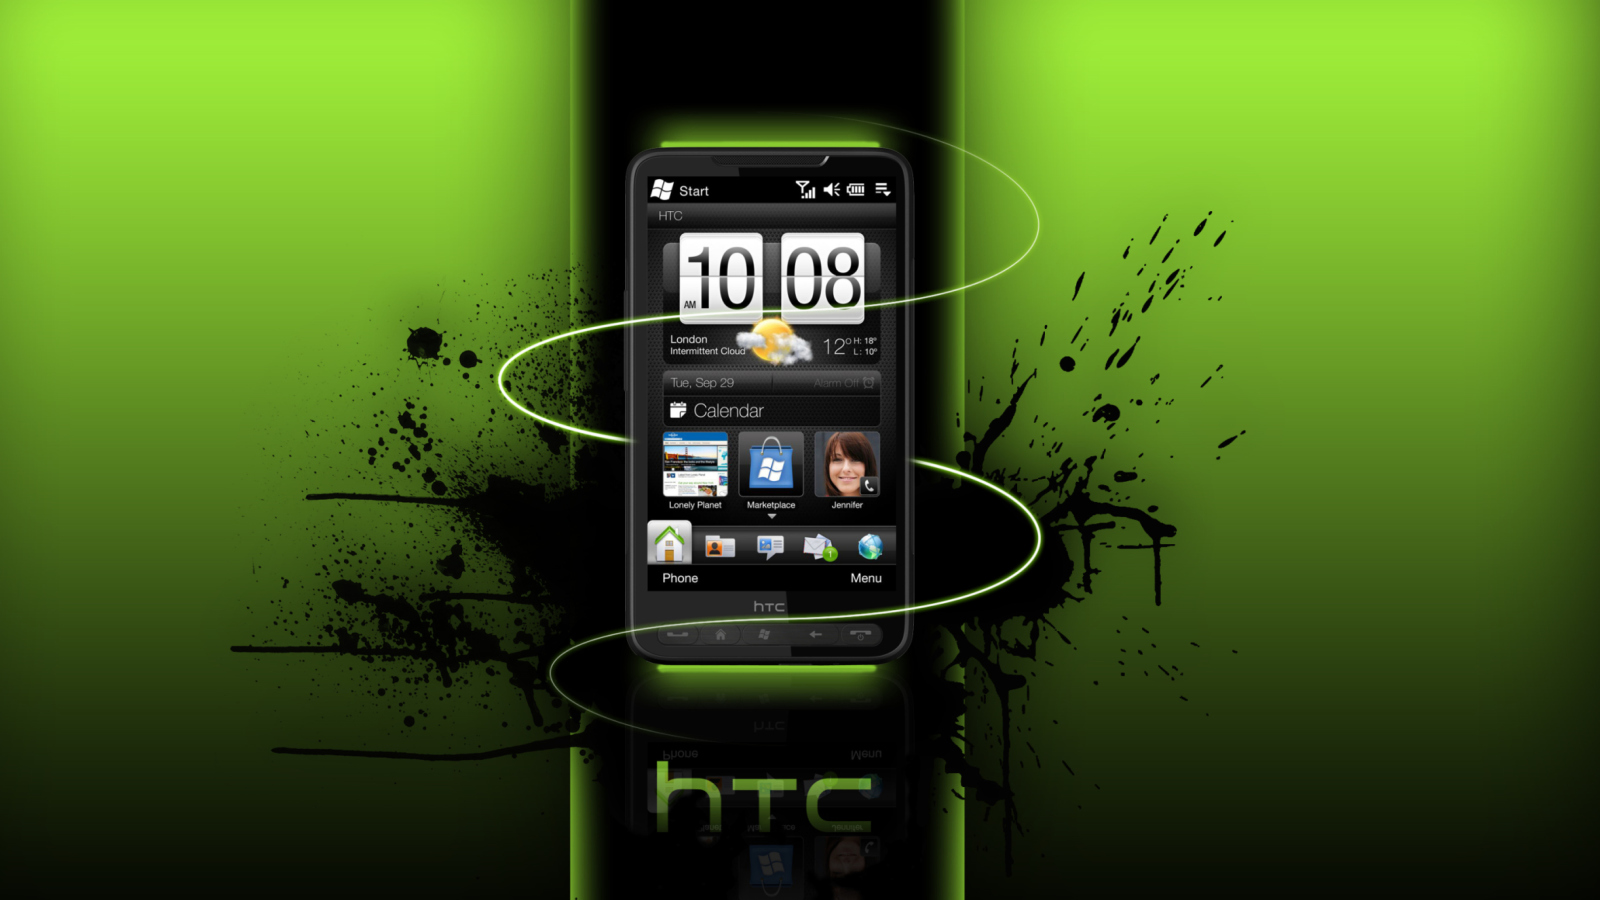 HTC HD wallpaper 1600x900